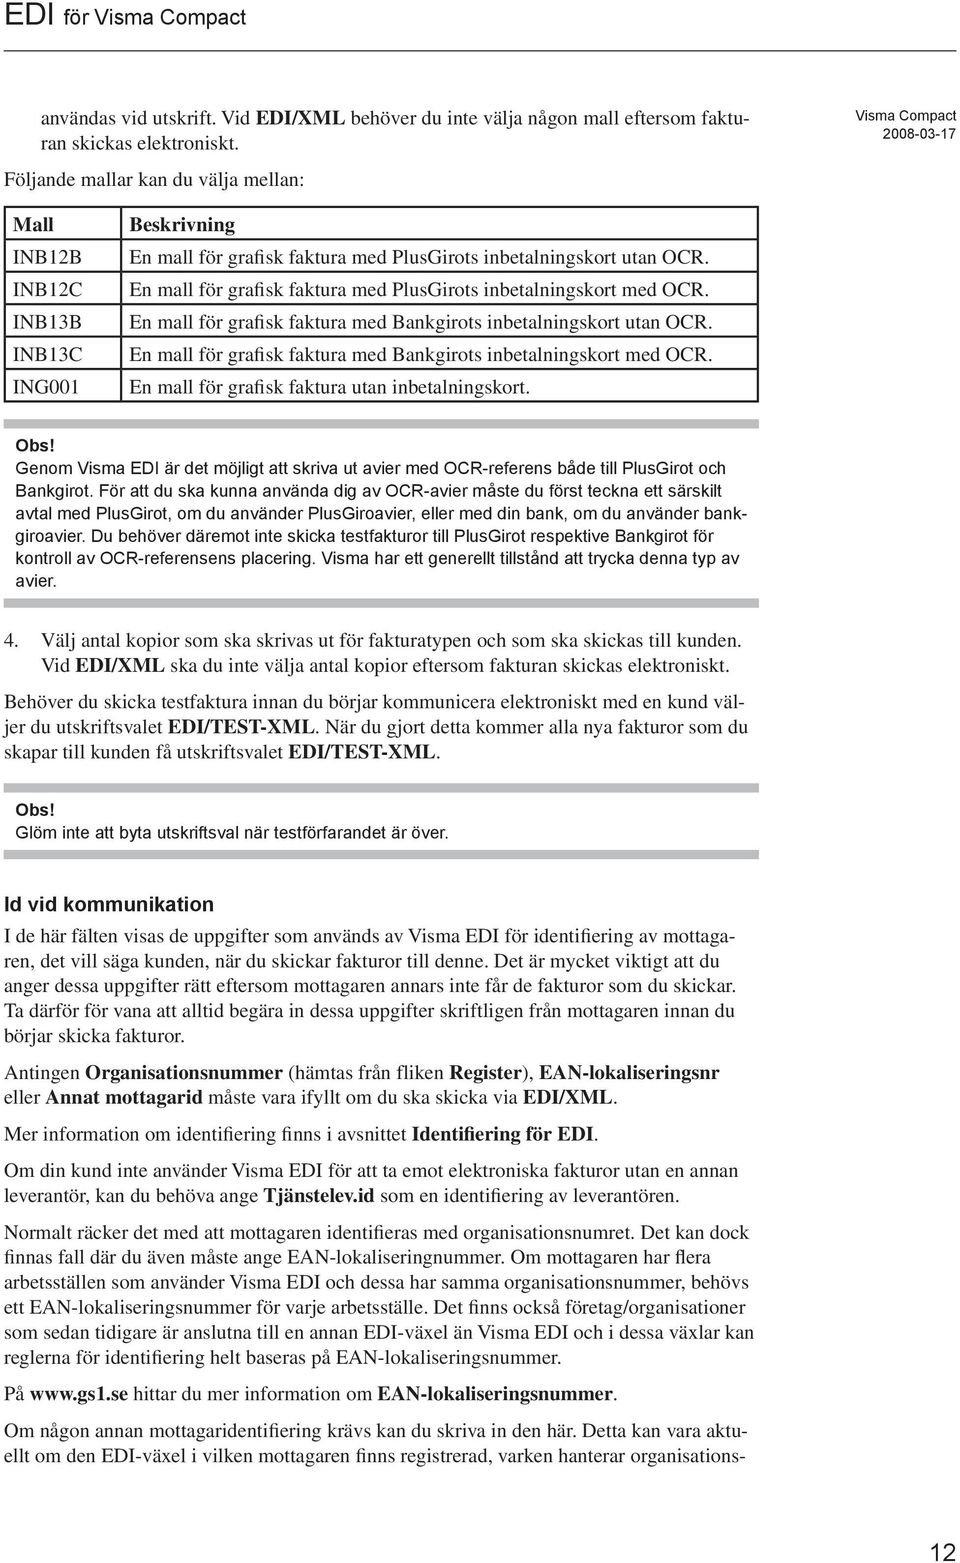 Visma EDI. EDI för Visma Compact. Inledning. Innehåll - PDF Free ...